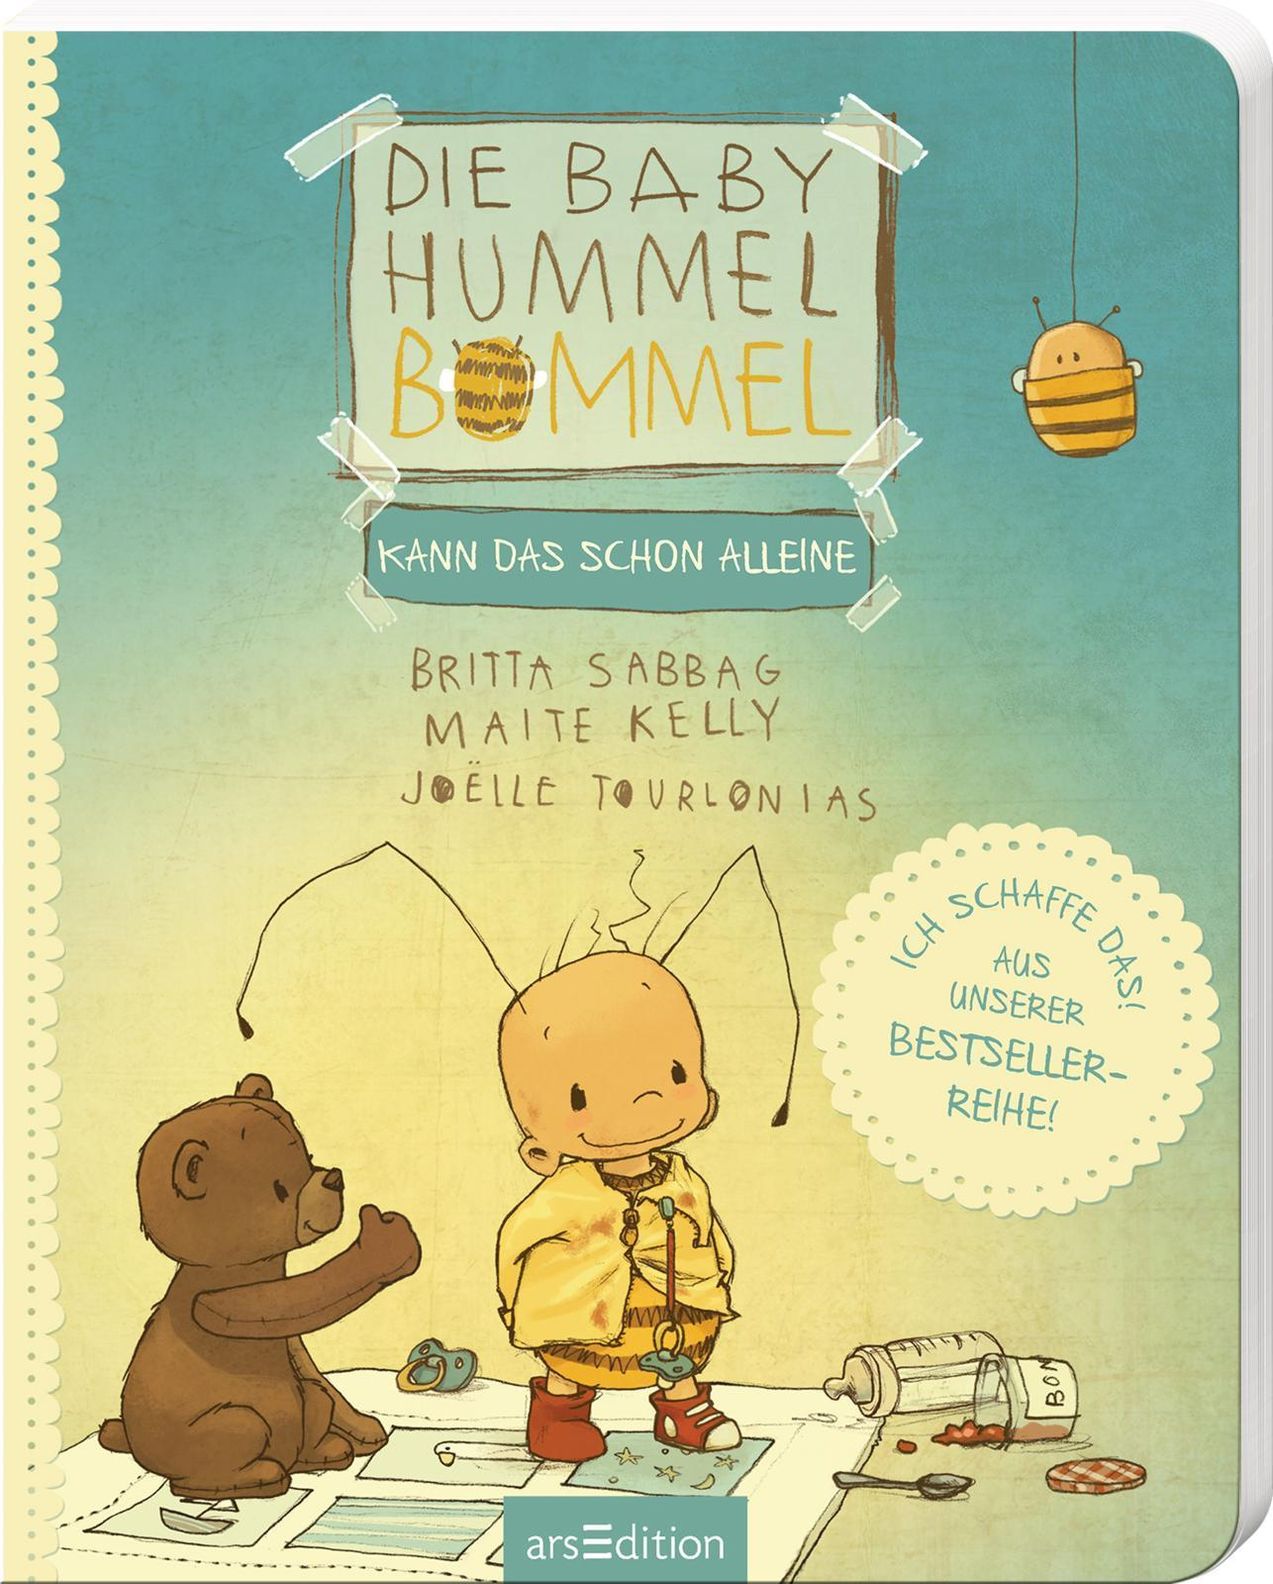 Die Baby Hummel Bommel - kann das schon alleine kaufen